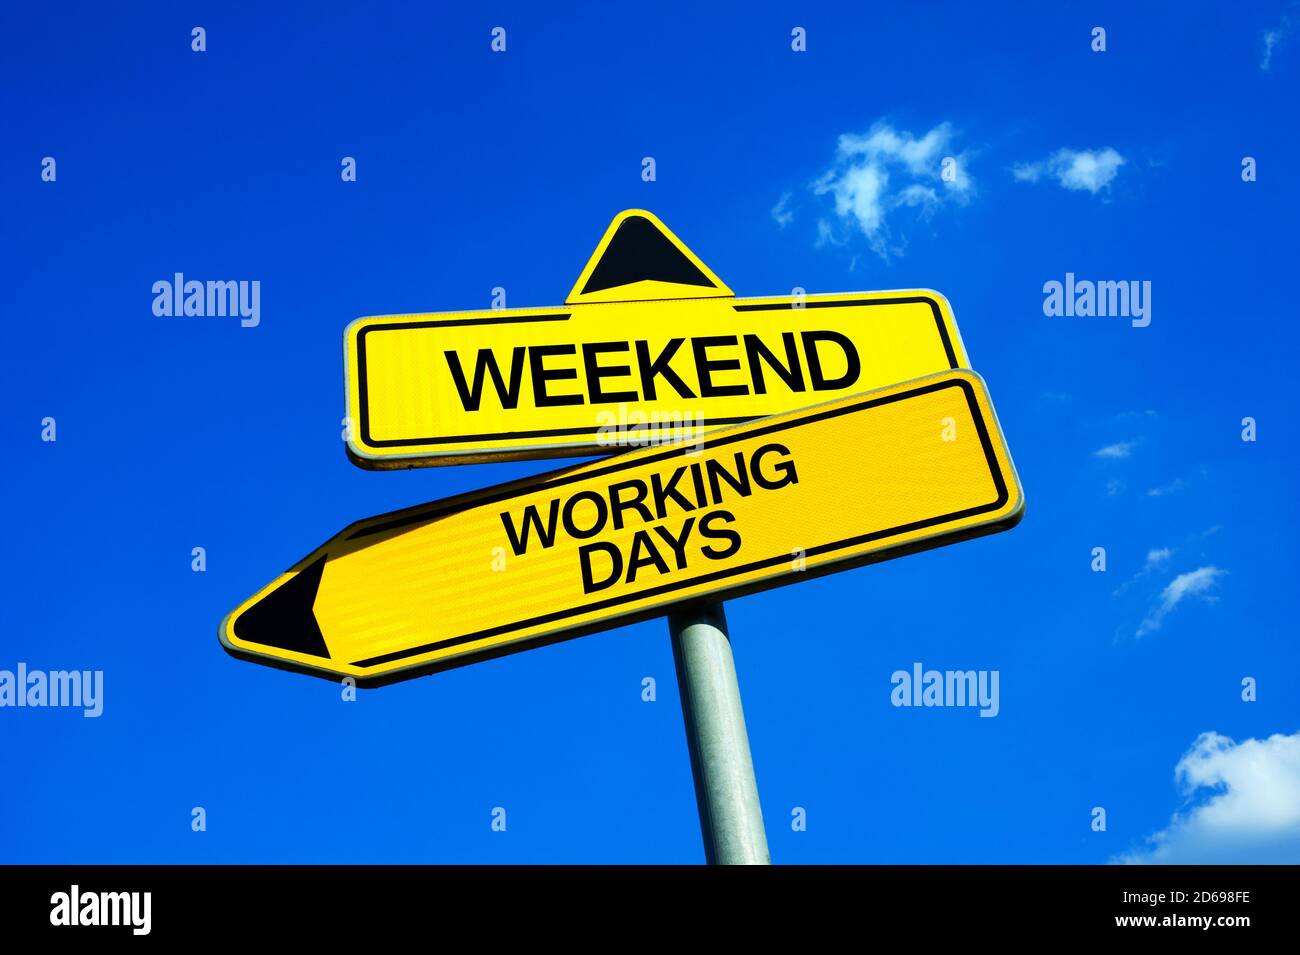 Fin de semana vs días de trabajo - señal de tráfico con dos opciones - fin  de la semana de trabajo y comienzo de los días libres después del viernes.  Sábado y